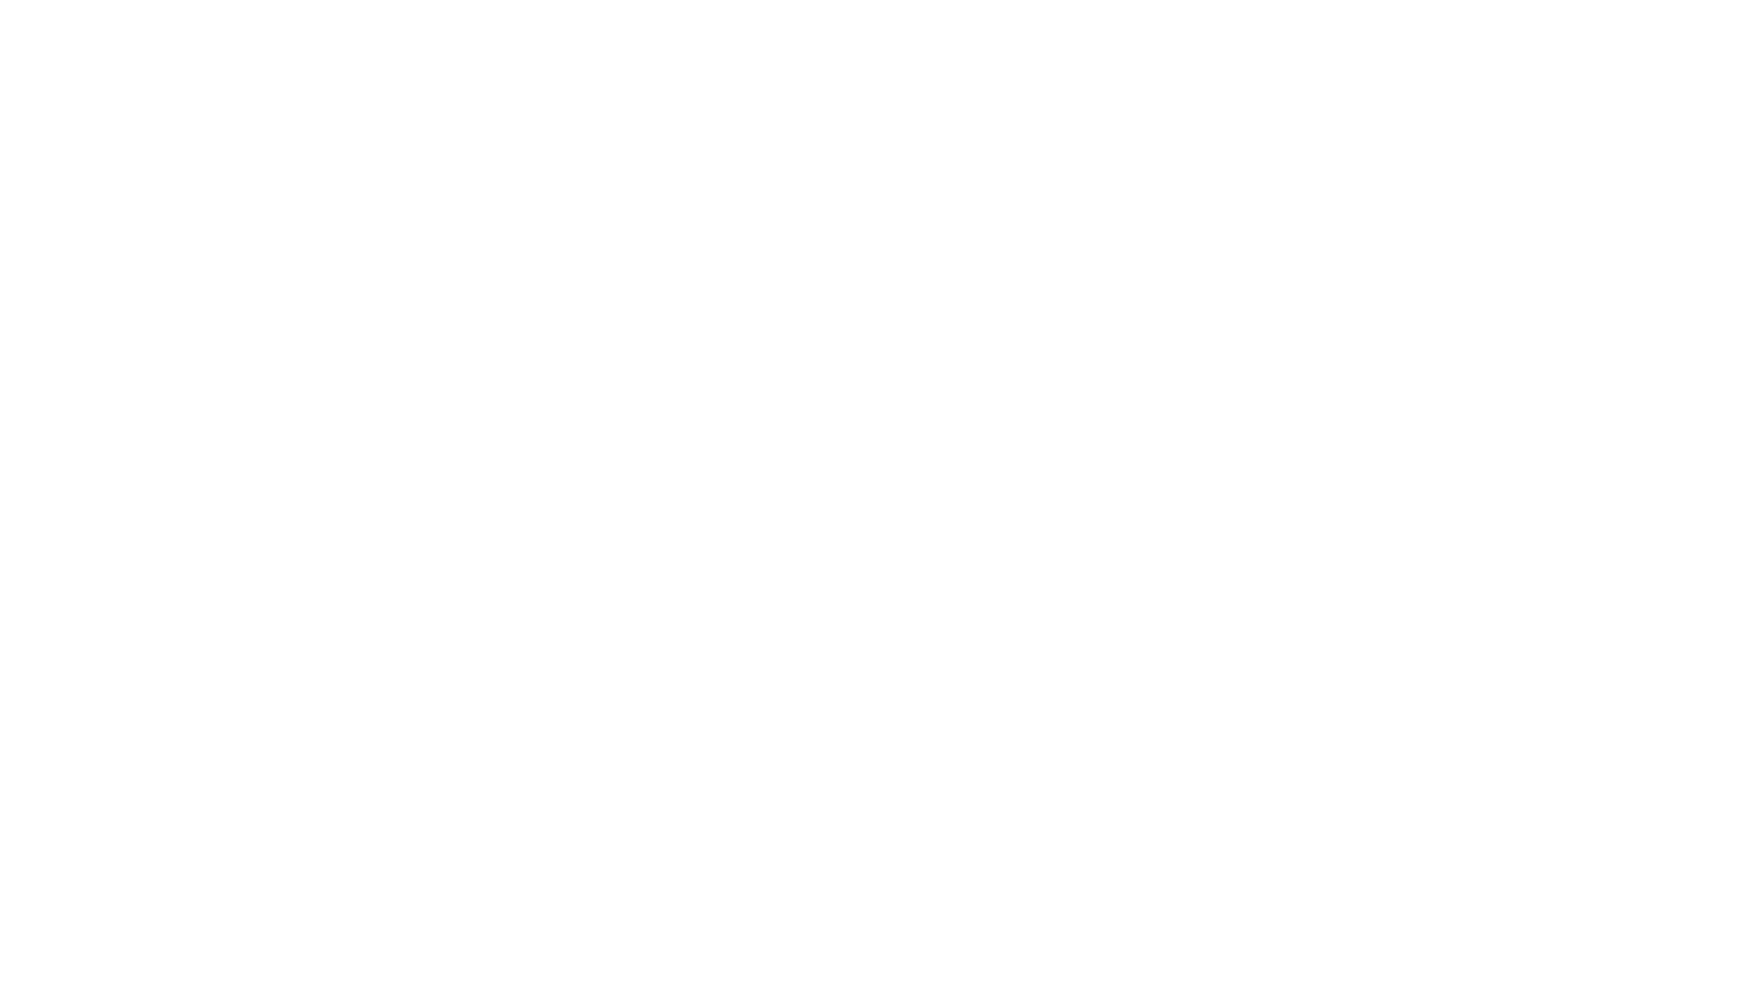 Culture Libre